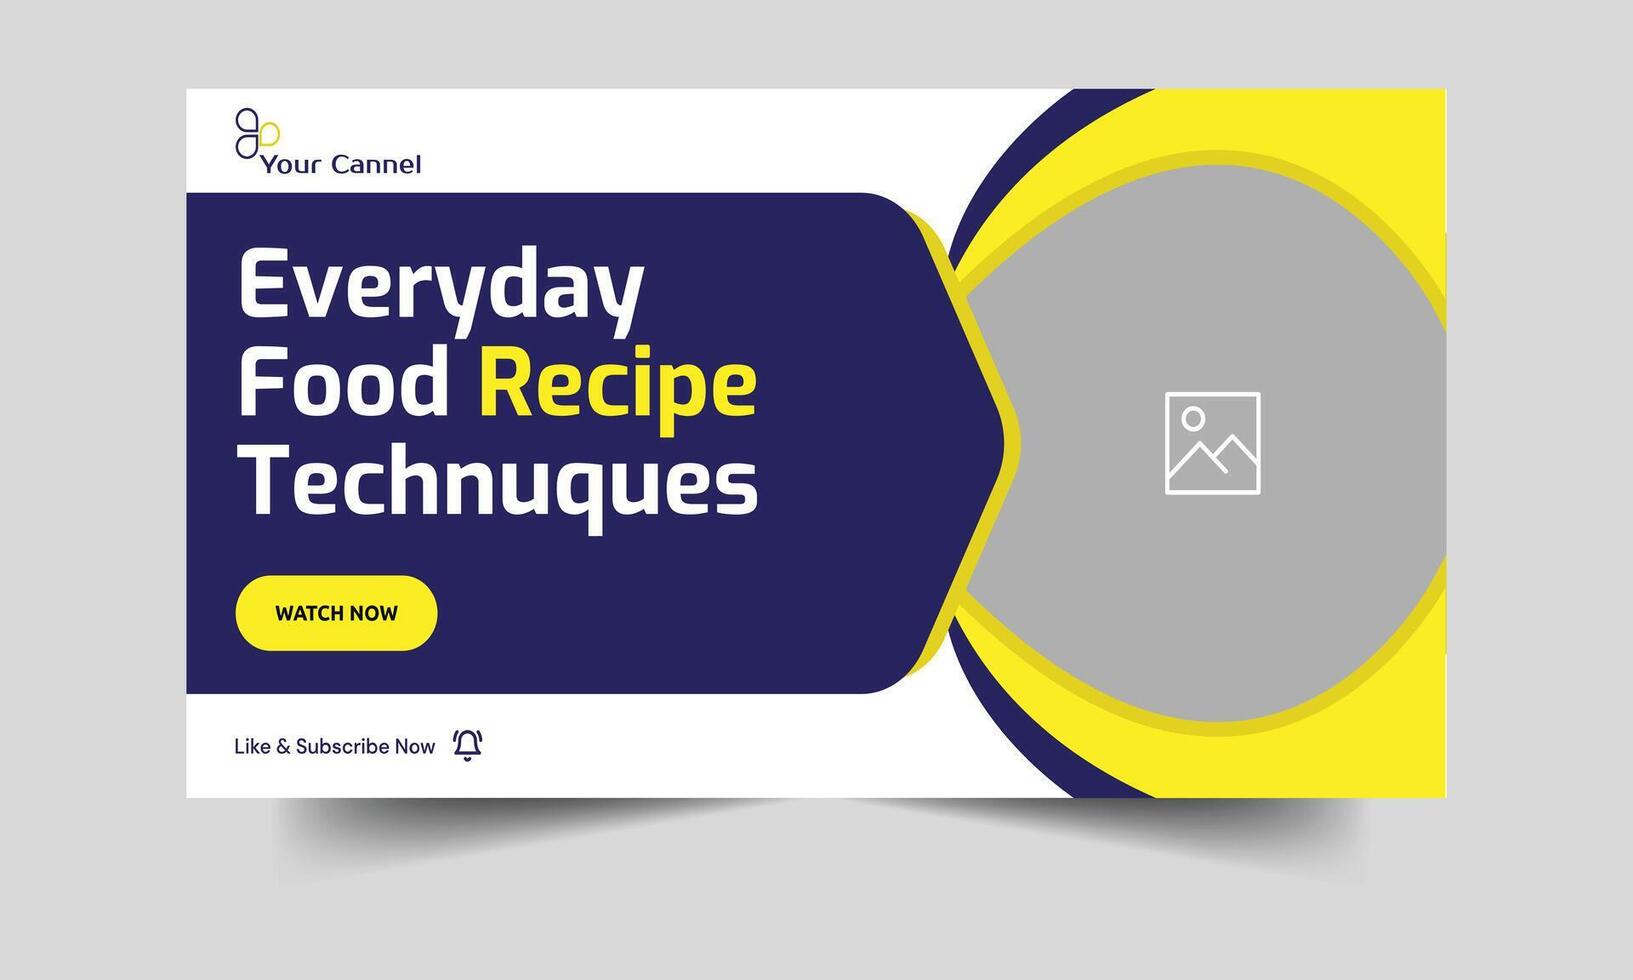 Tipps und Tricks zum Kochen Rezepte Entwerfen ein Video Startseite Banner und Kommen oben mit Täglich Mahlzeit Ideen Vektor eps 10 Datei Format mit konfigurierbar Video Miniaturansicht Design